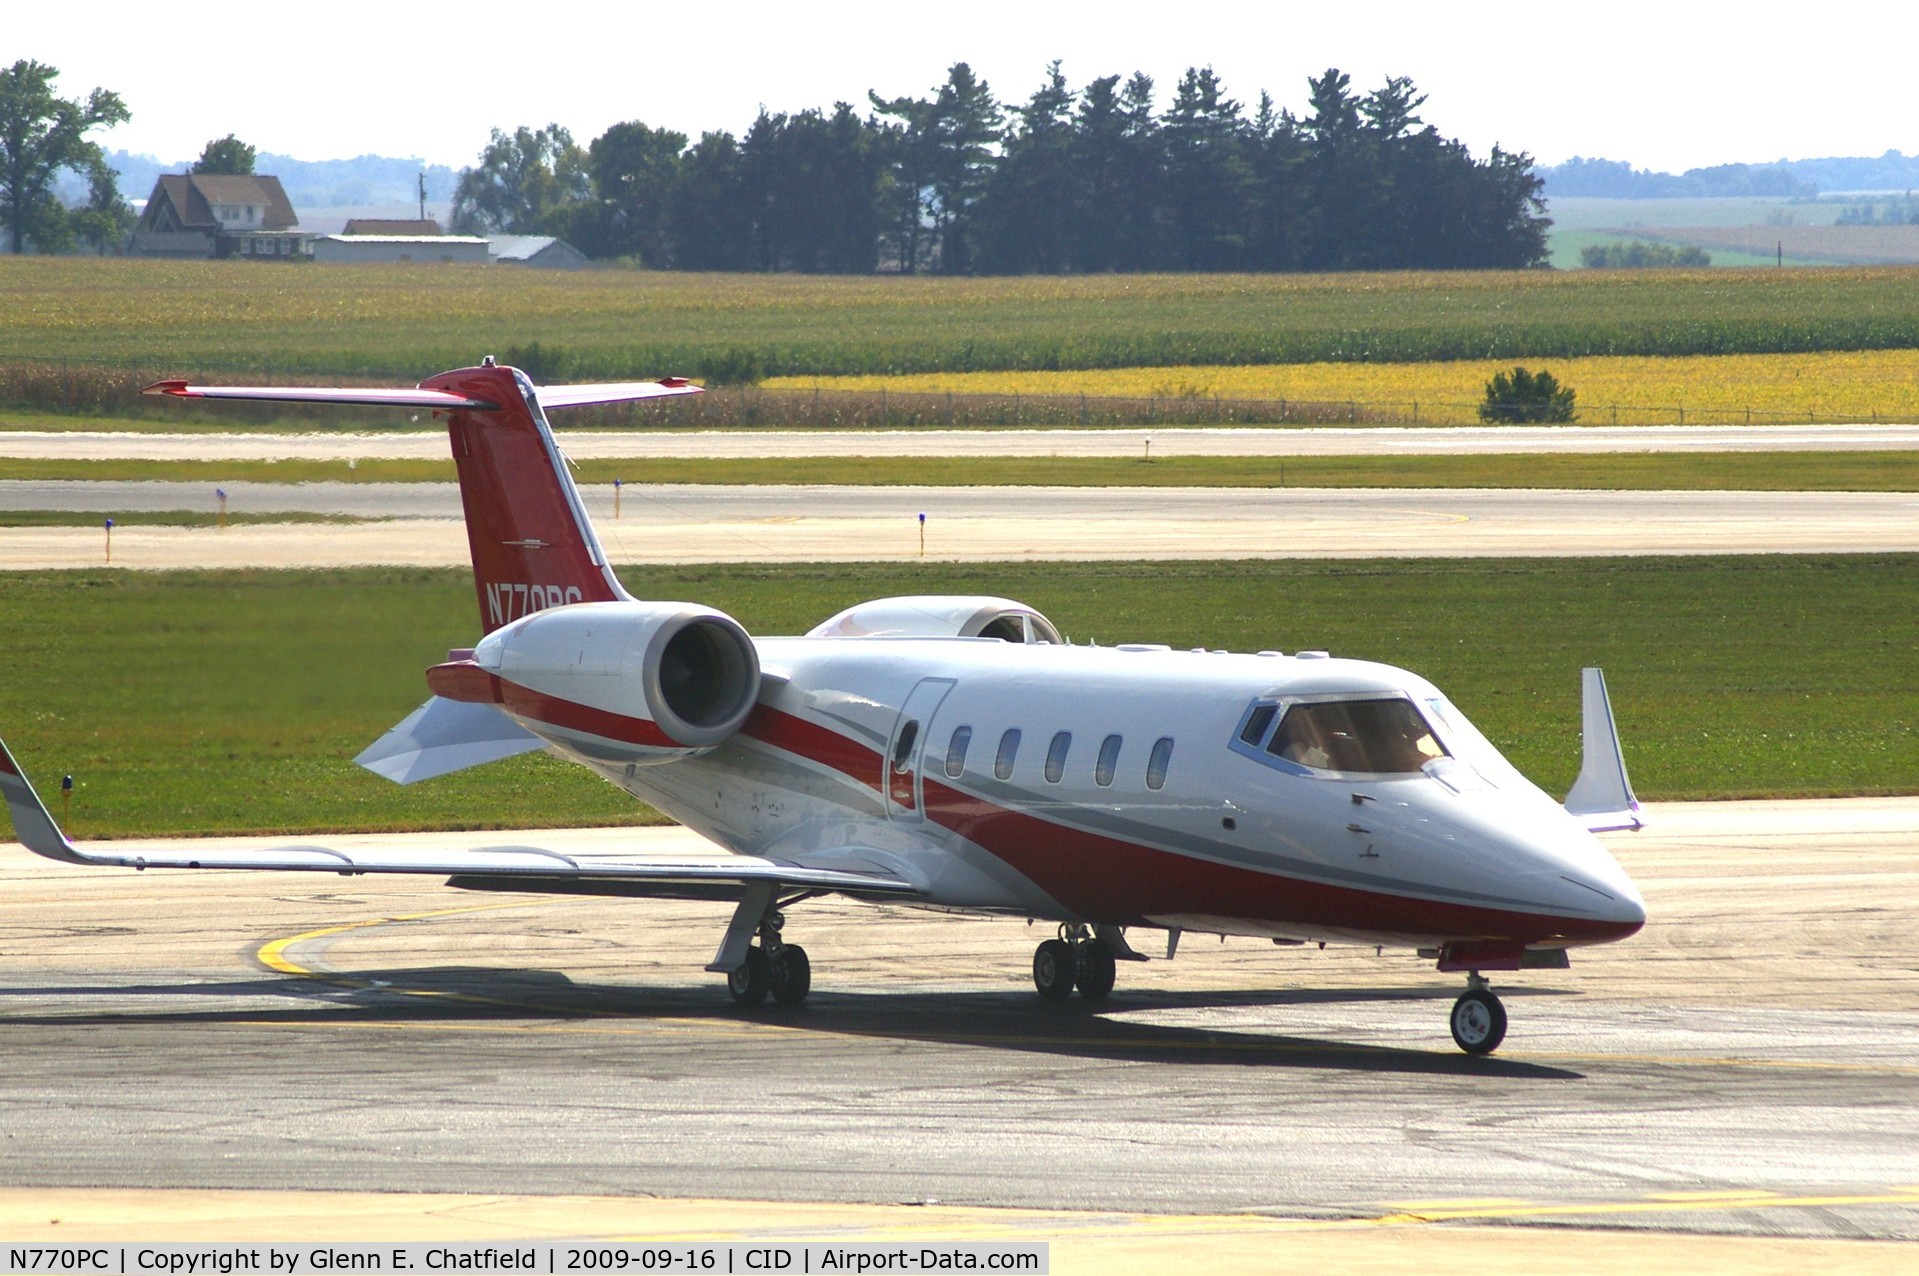 N770PC, 2007 Learjet 60 C/N 318, Taxiing to Landmark FBO, after landing runway 27